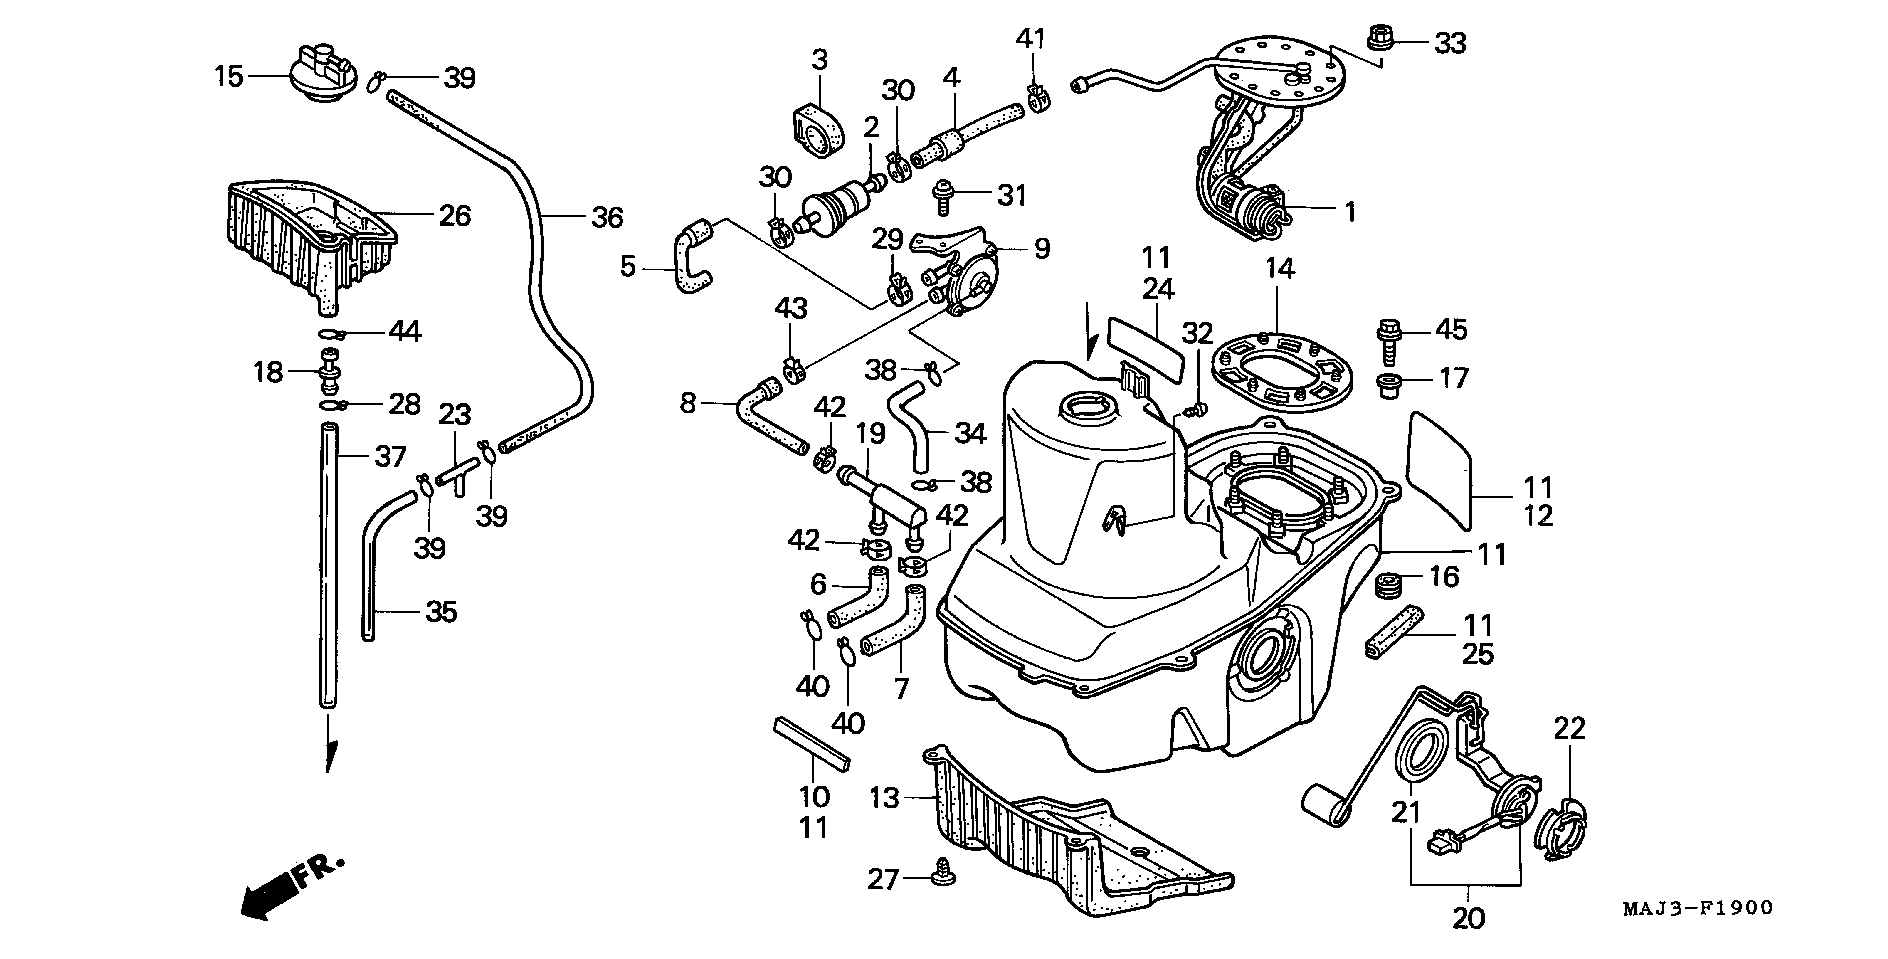 Parts fiche Fuel Tank ST1100